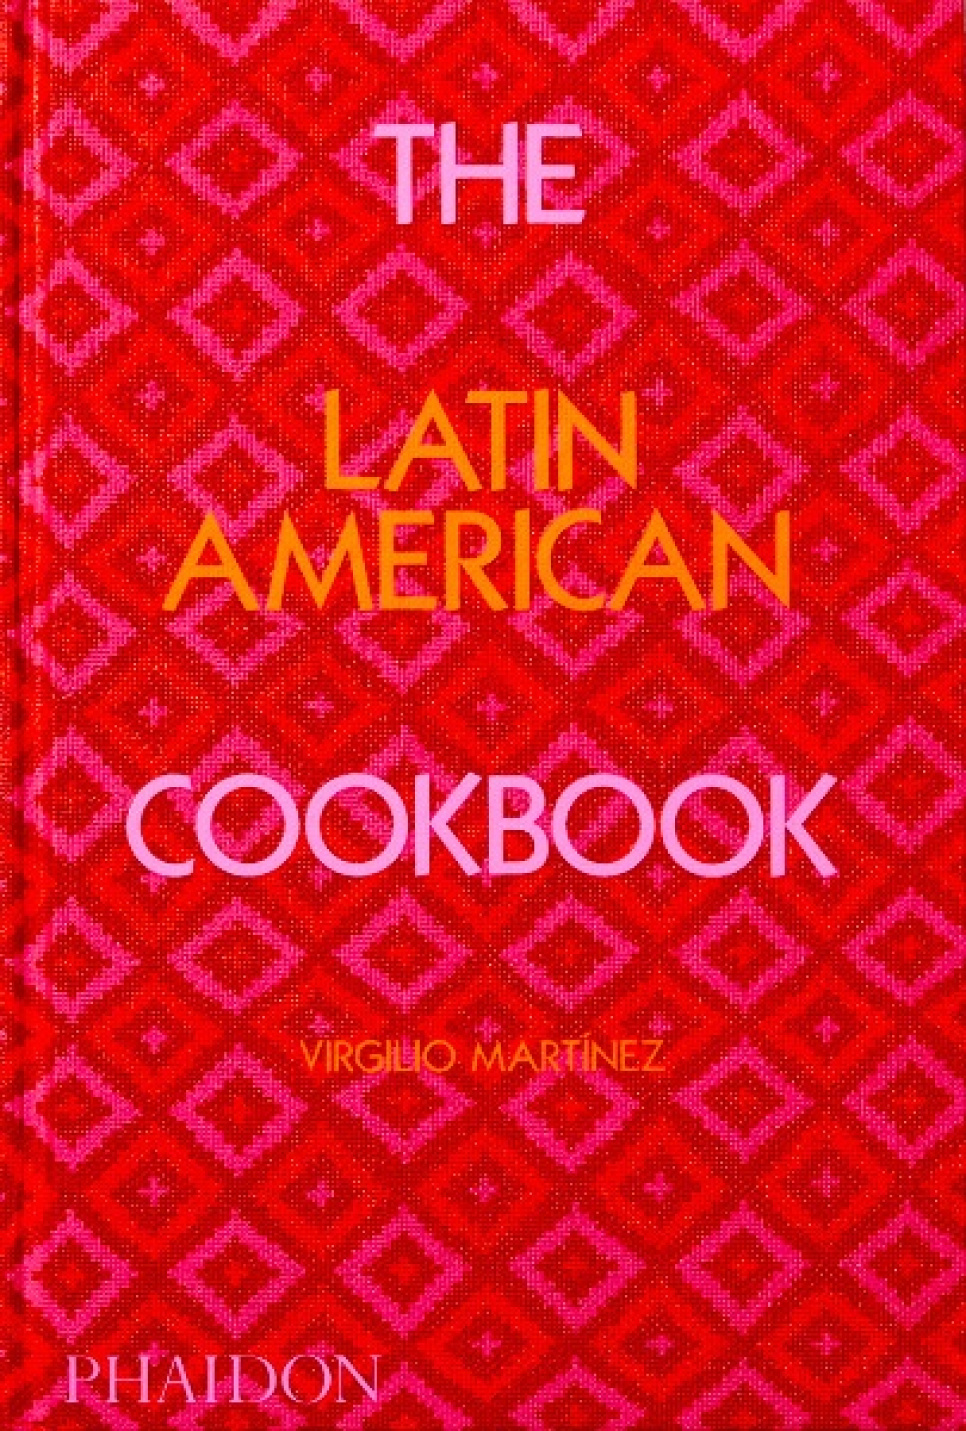 Das lateinamerikanische Kochbuch - Virgilio Martínez in der Gruppe Kochen / Kochbücher / Nationale & regionale Küche / Süd- & Lateinamerika bei The Kitchen Lab (1987-26131)